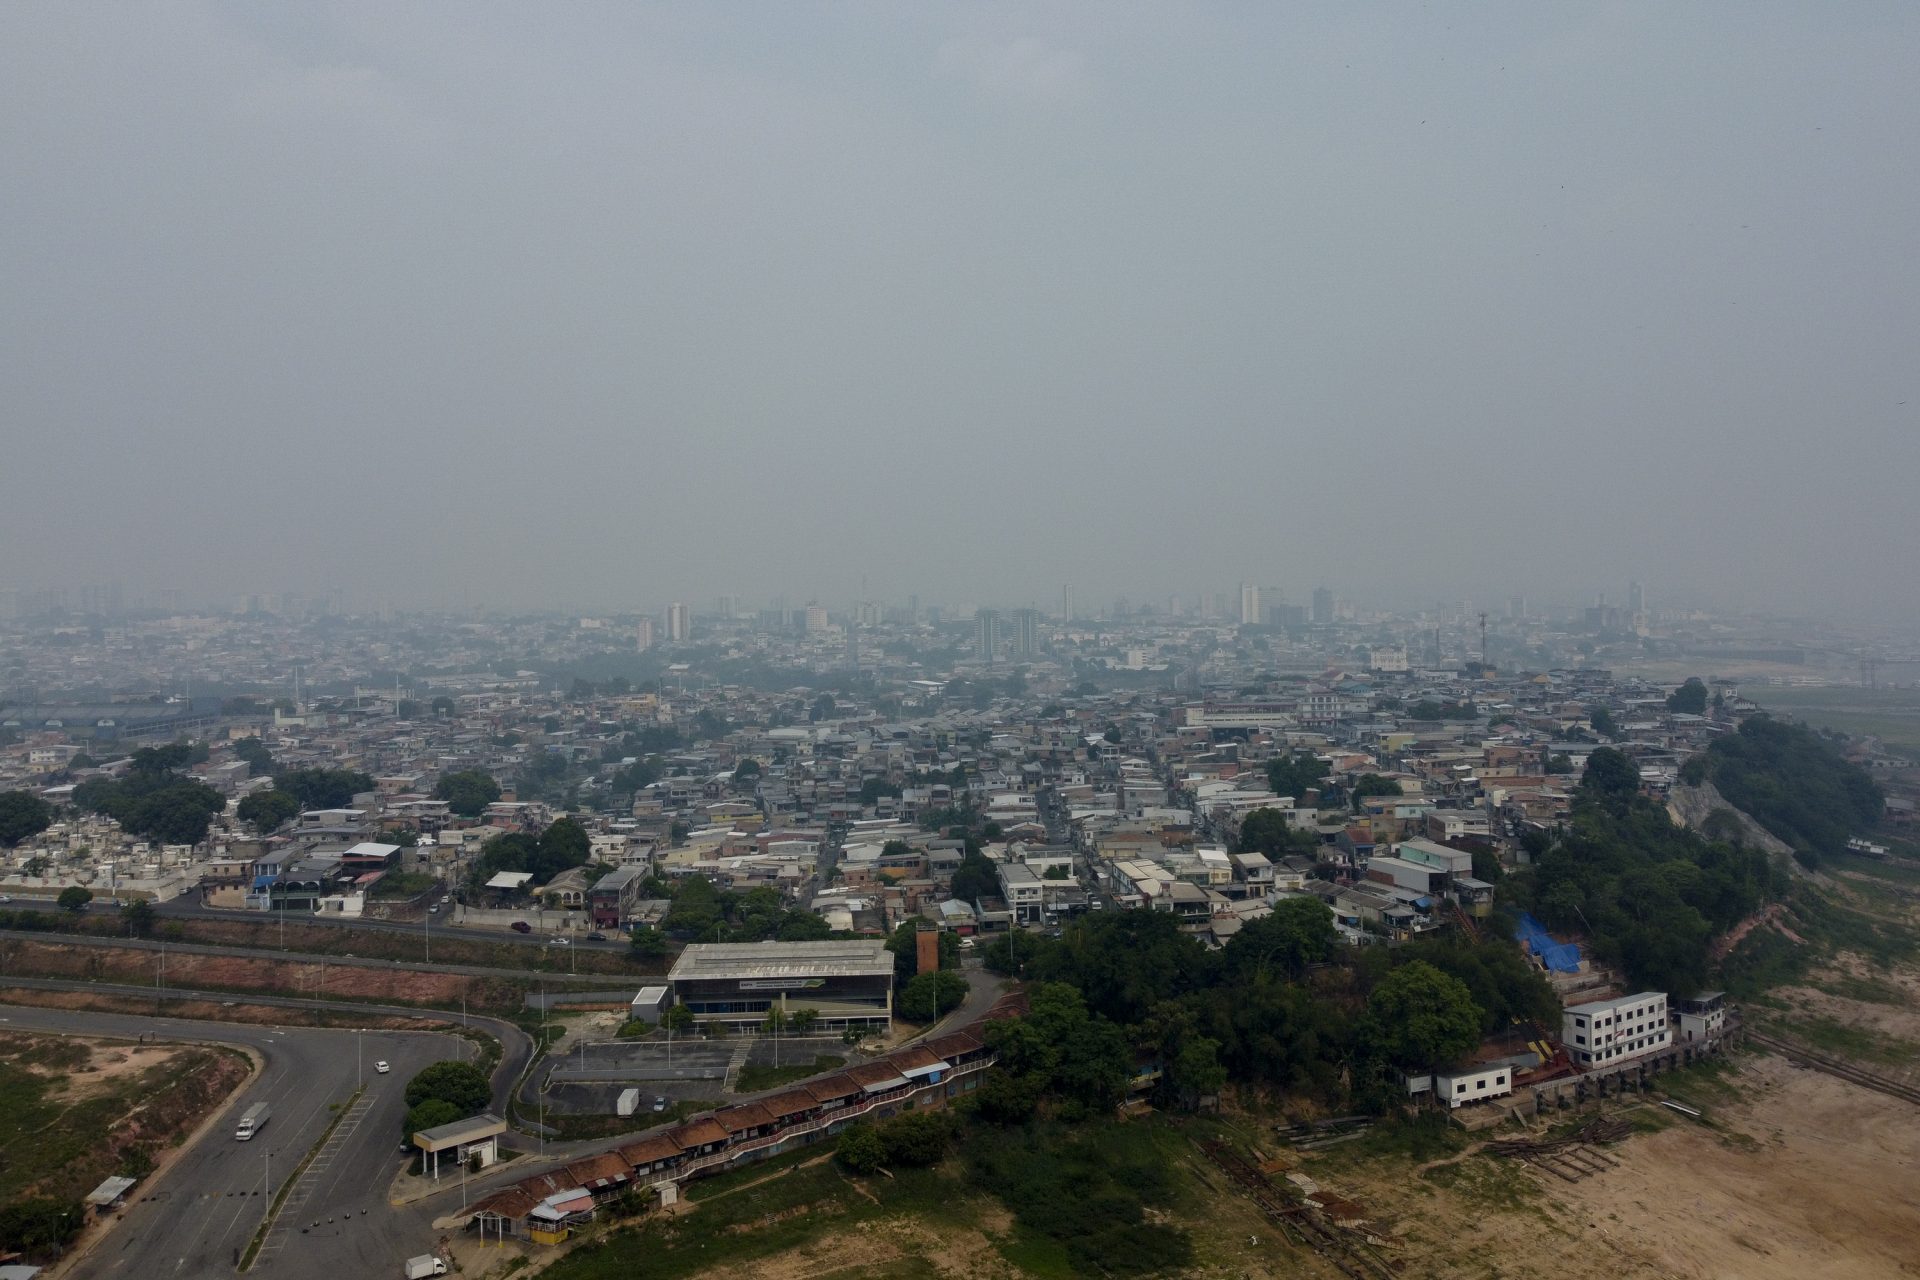 Previsão do tempo Manaus amanheceu coberta por fumaça proveniente de queimadas - Foto: Suamy Beydoun/AGIF - Agência de Fotografia/Estadão Conteúdo